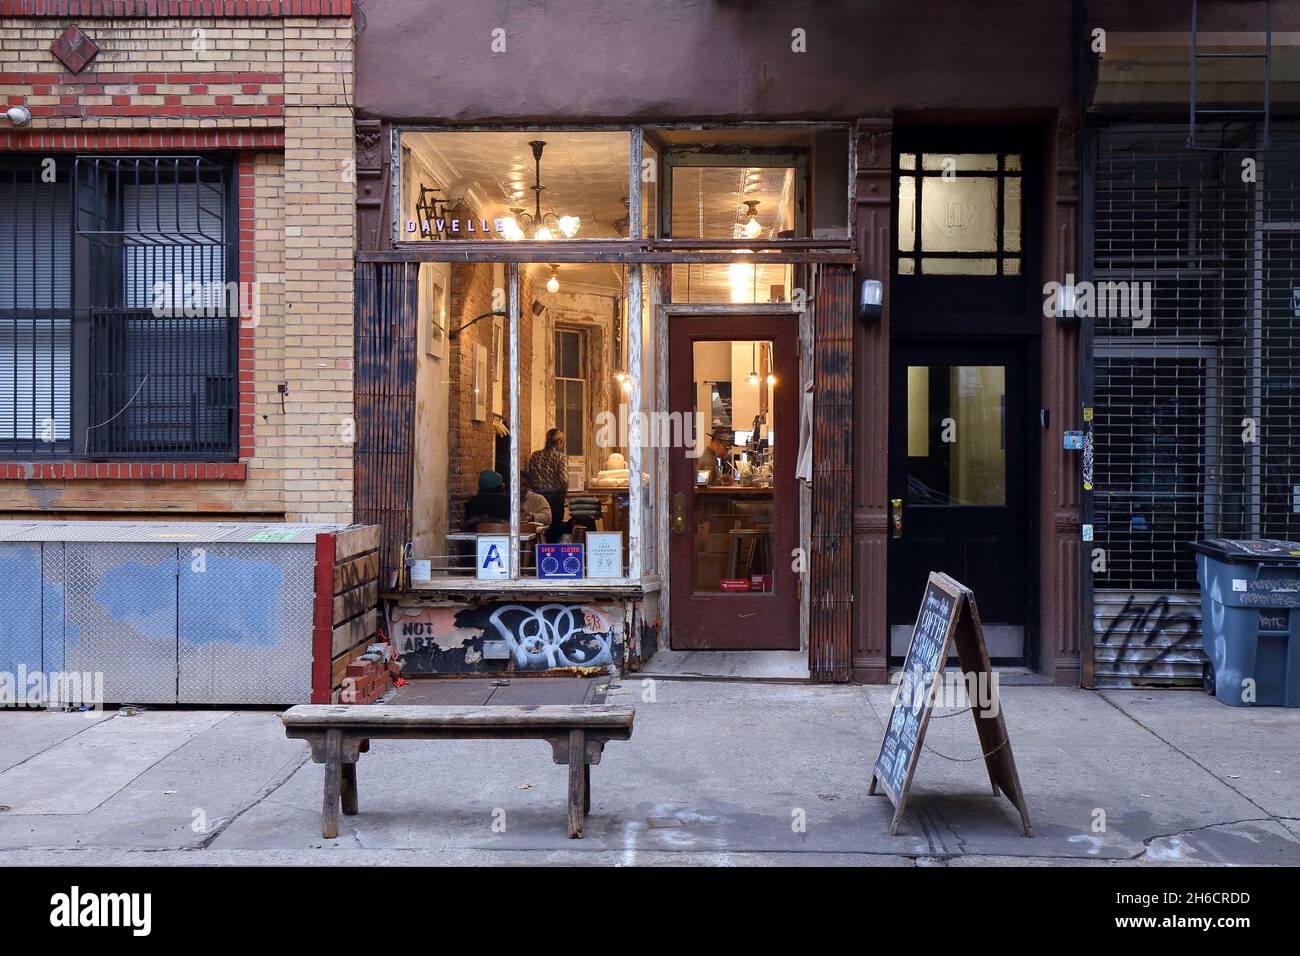 Davelle, 102 Suffolk St, New York, NYC photo d'un café japonais de style kissetten dans le Lower East Side de Manhattan. Banque D'Images